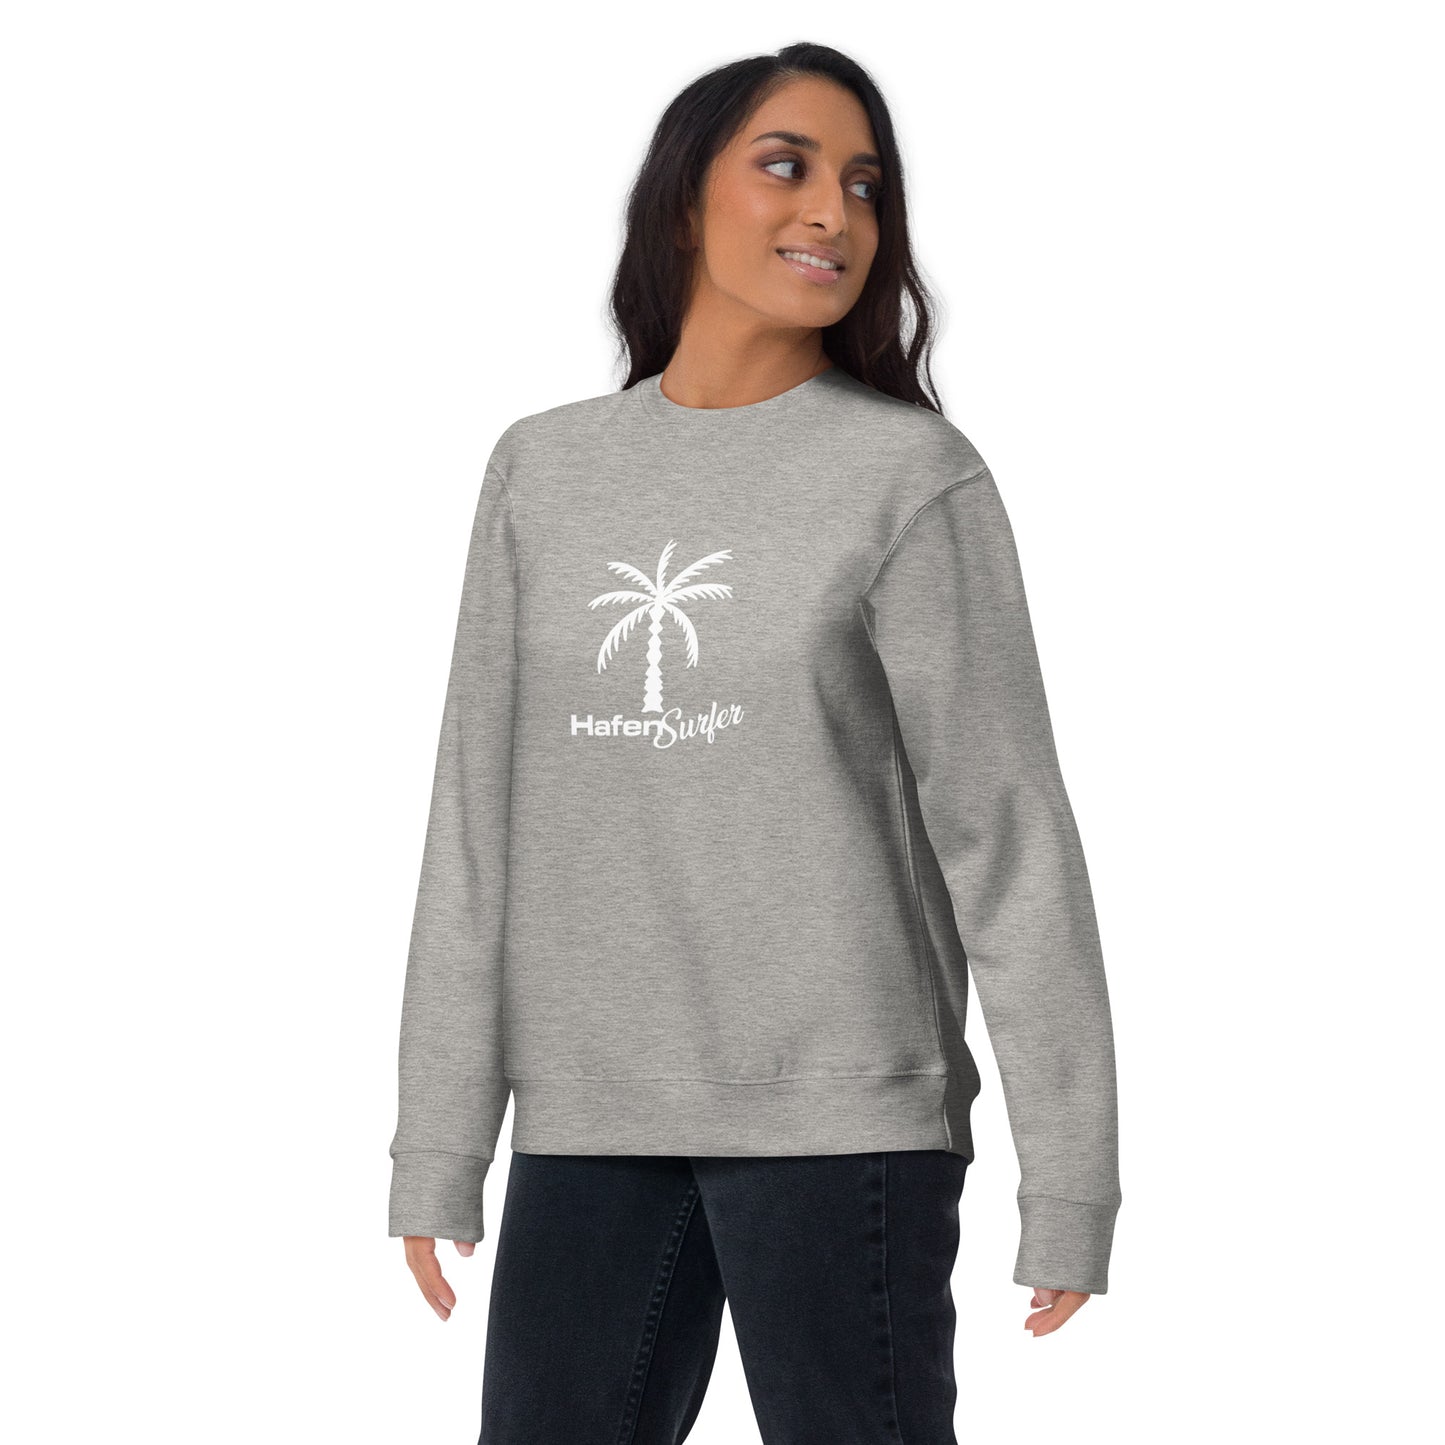 Hafensurfer Unisex Premium Sweatshirt Palm